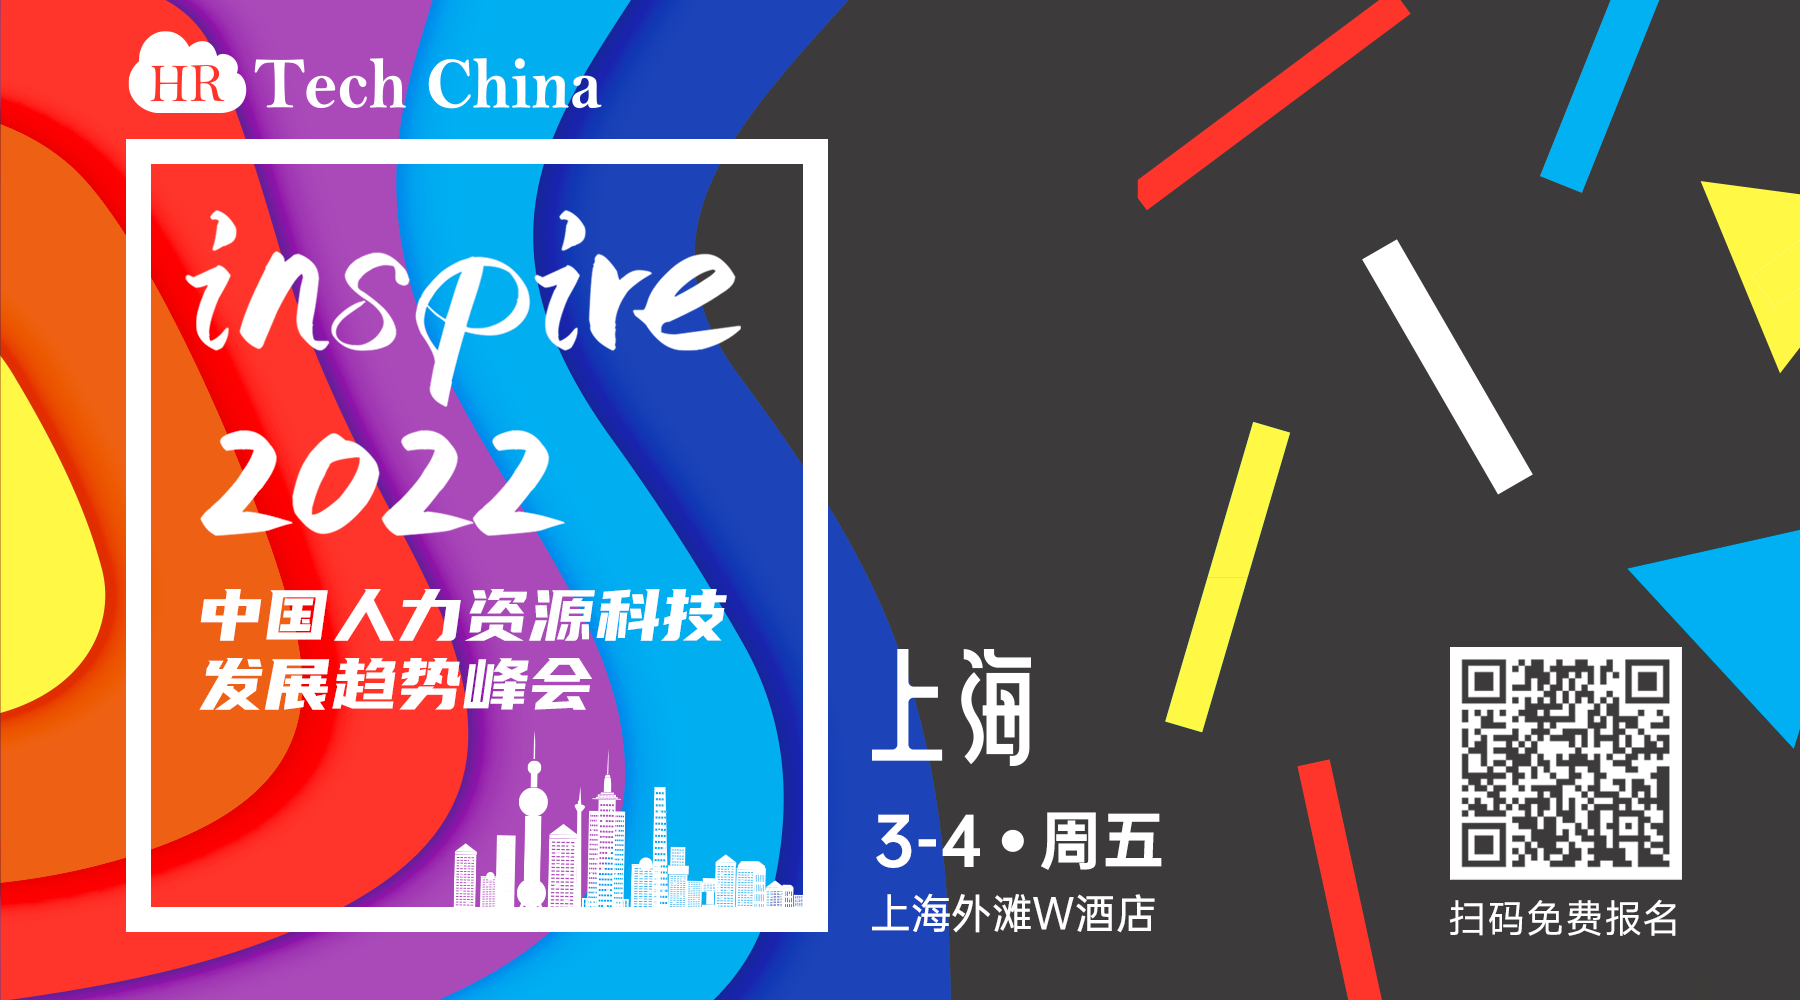 【开年巨制】Inspire 2022—中国人力资源科技发展趋势峰会将于3月4日在上海盛大举办